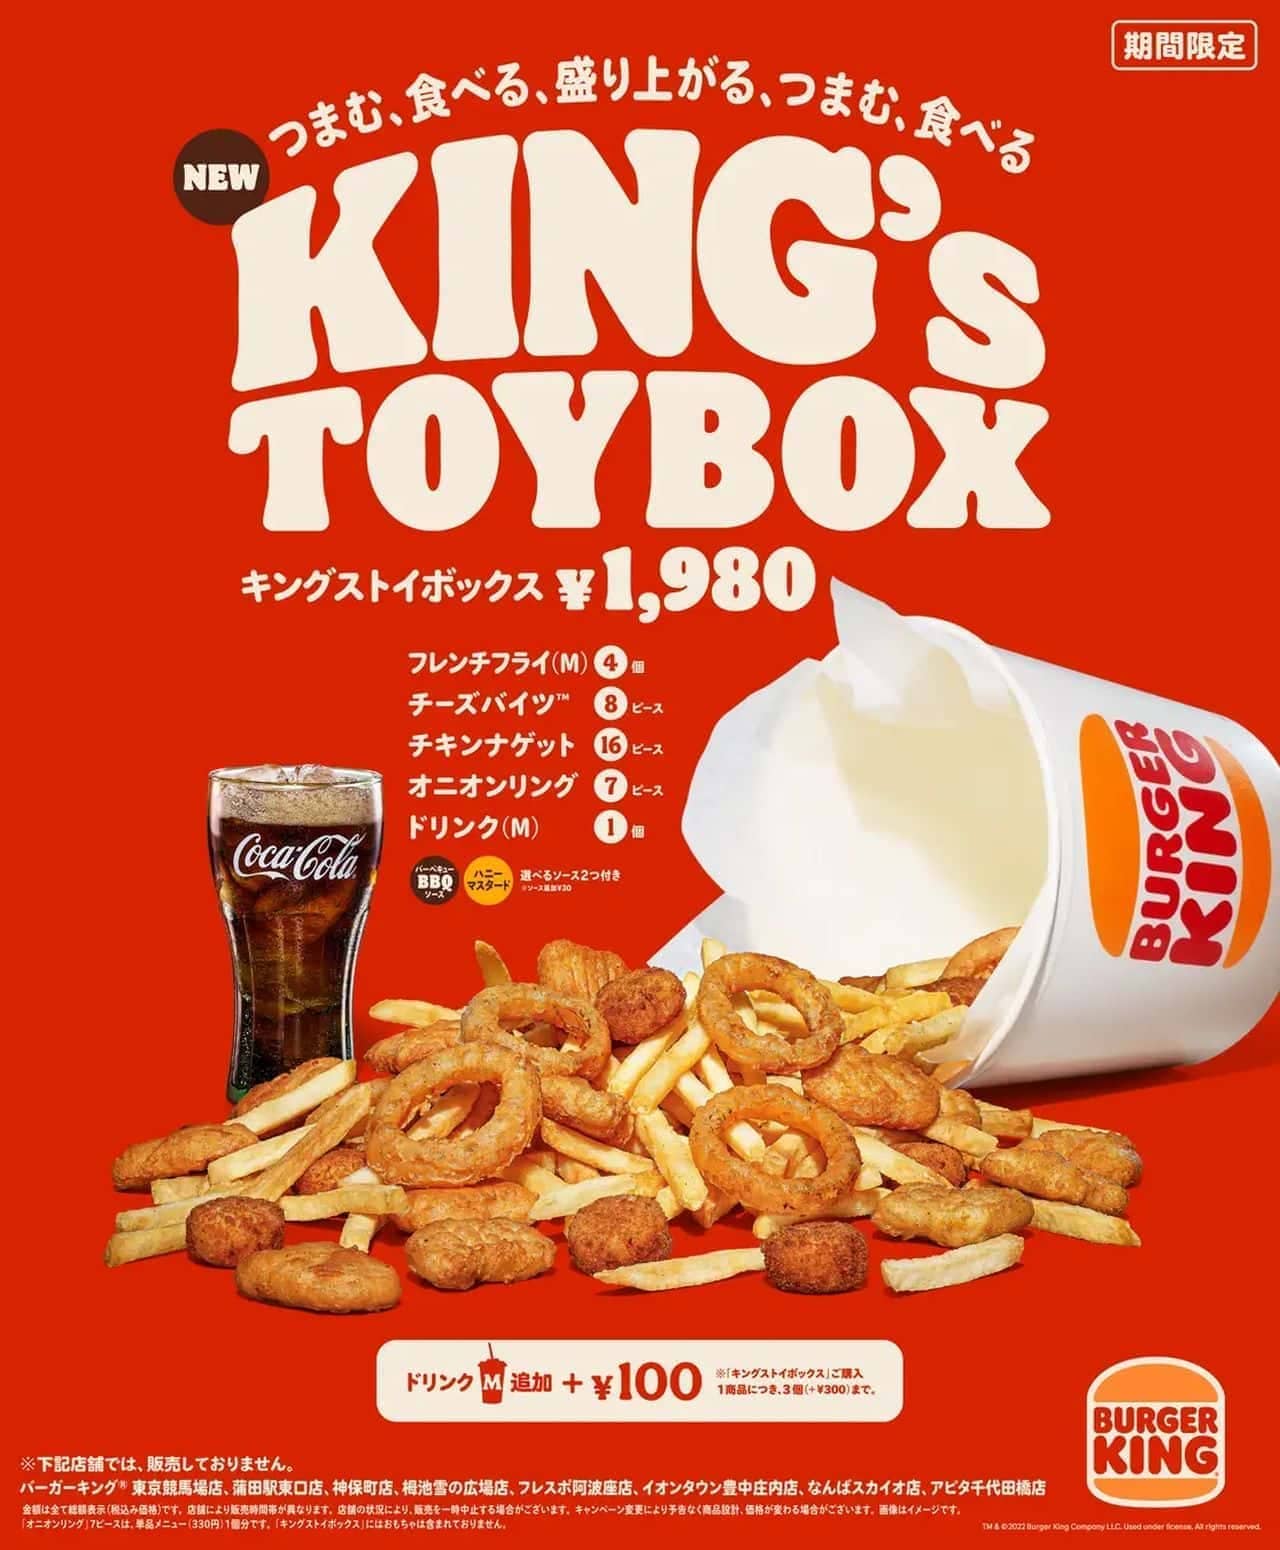 Burger King "King Stoy Box".